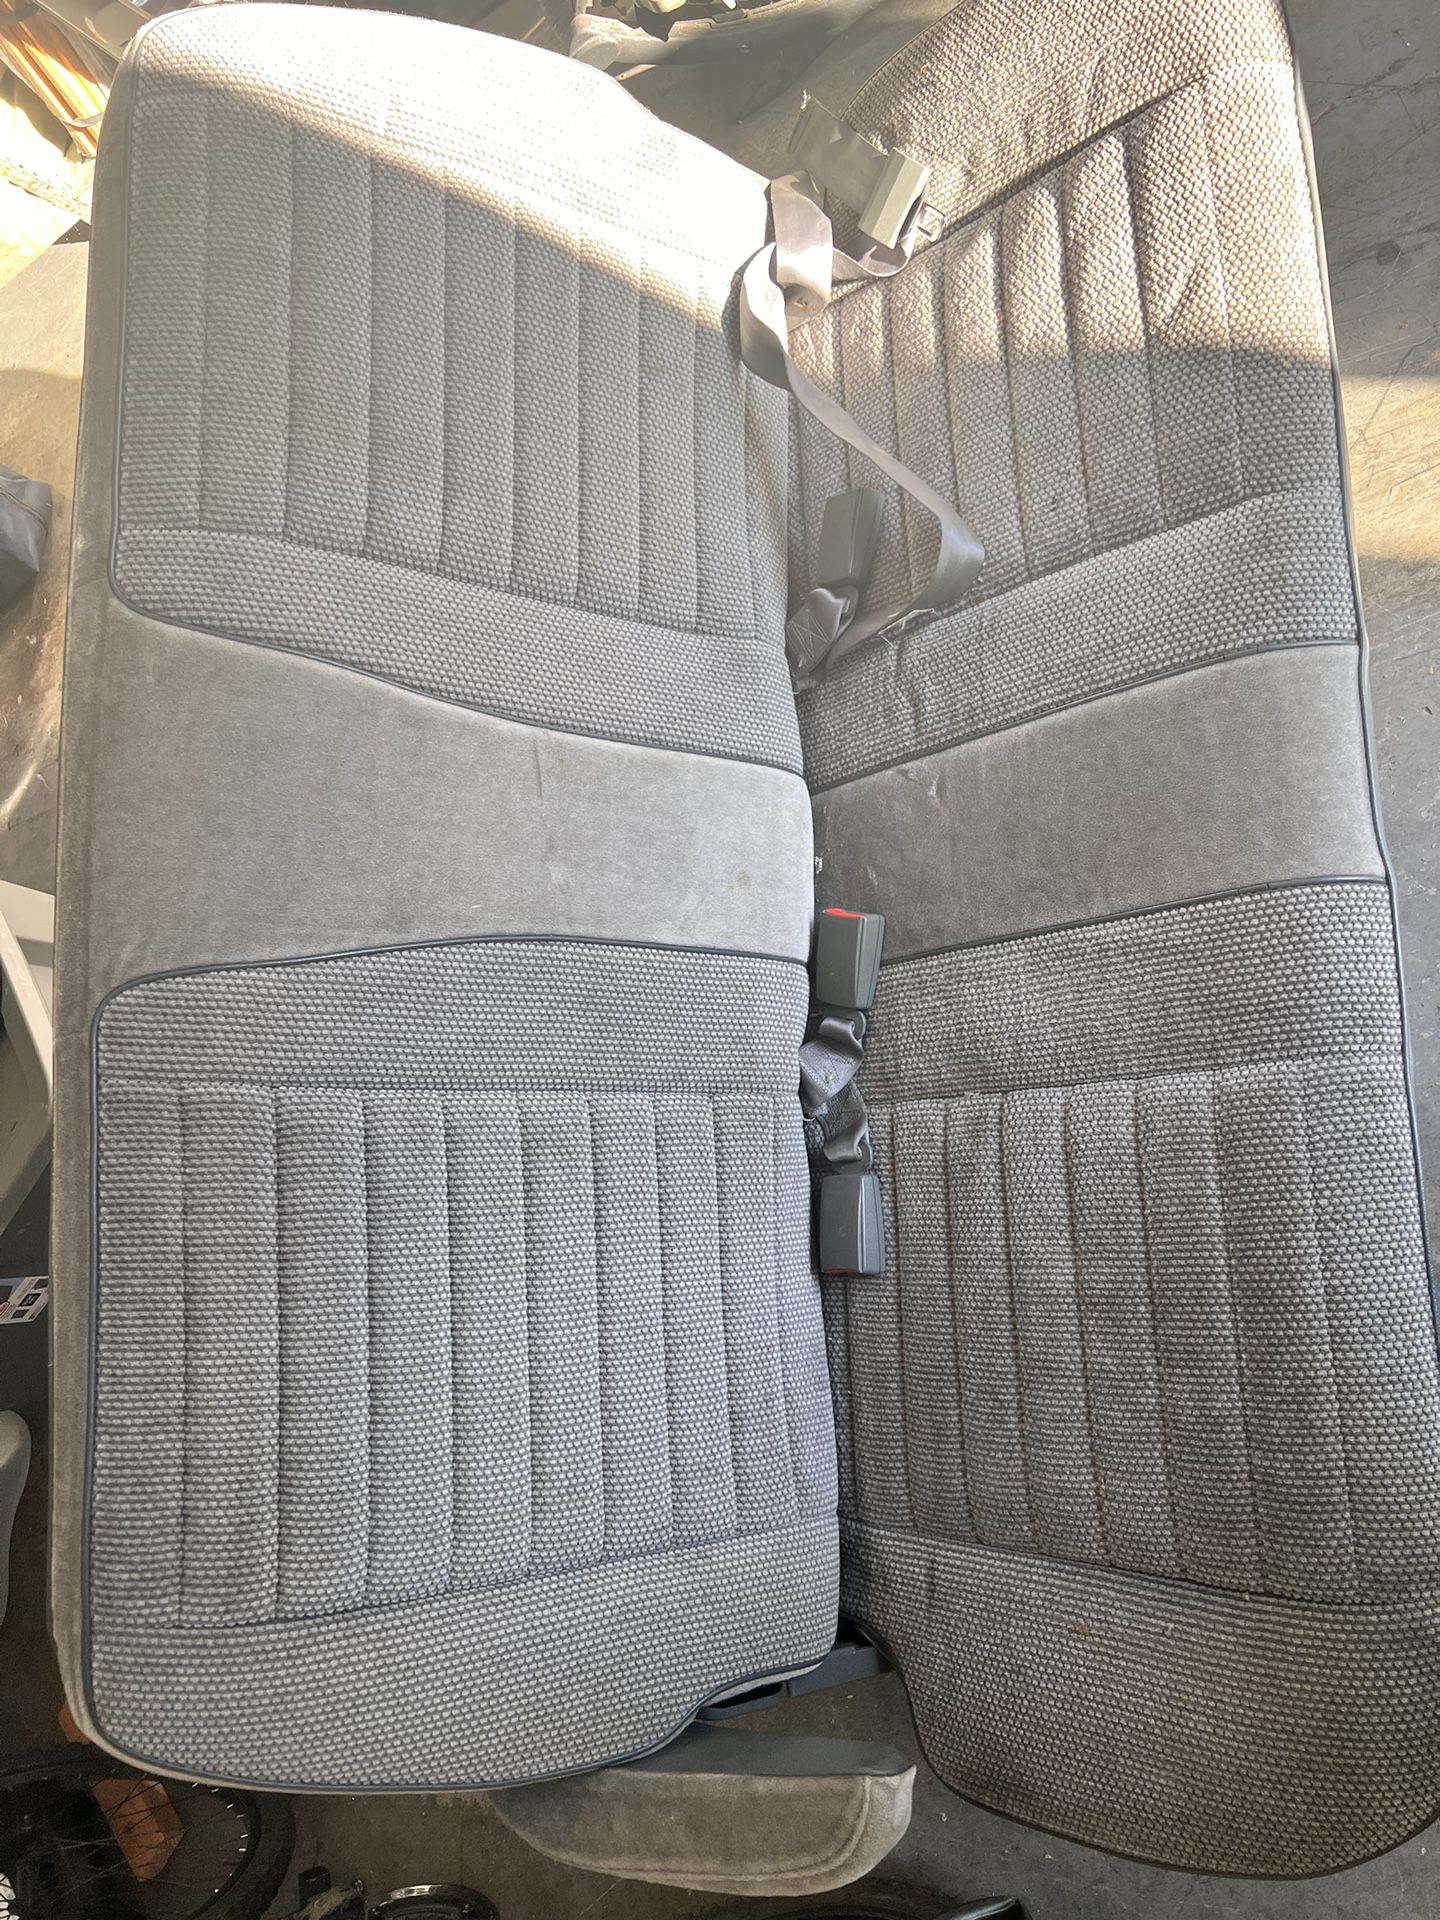 Chevy Astro Seat